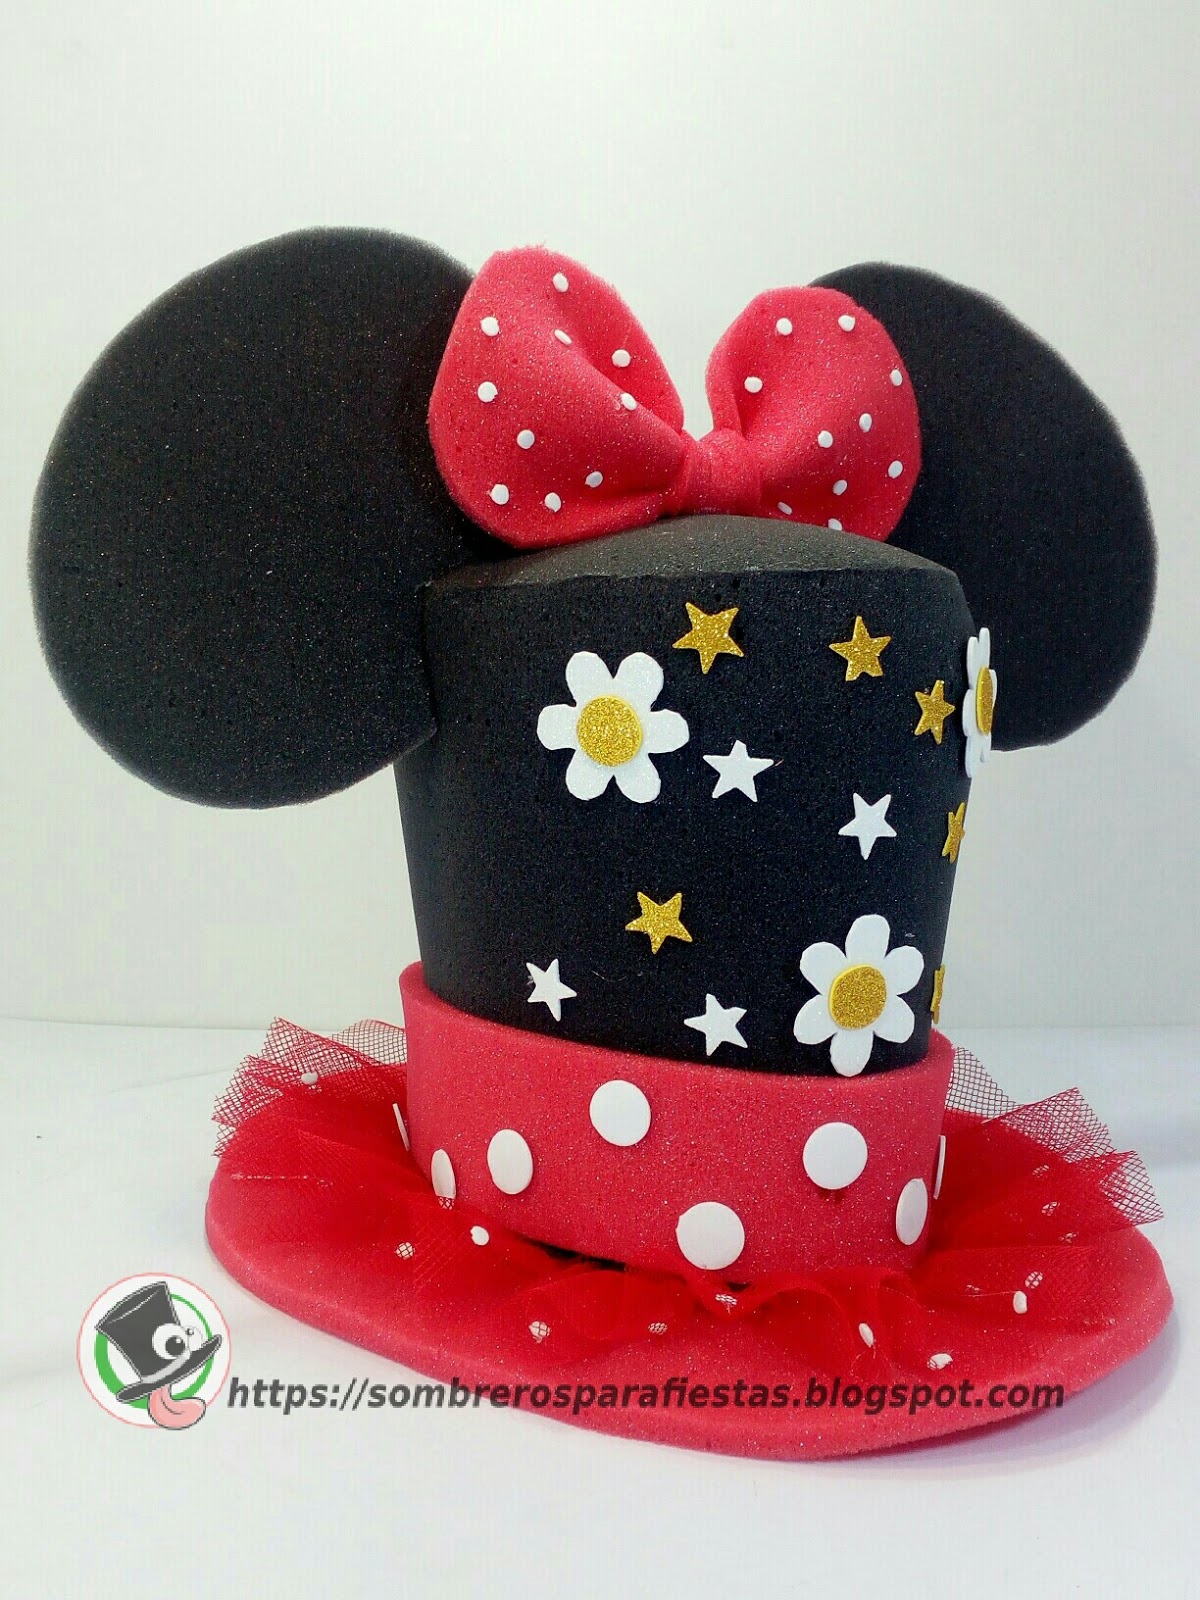 áspero controlador cocinar Sombreros locos para fiestas en Puebla, Sombreros personalizados para niños  y adultos: Sombrero con tema de Minnie Mouse.